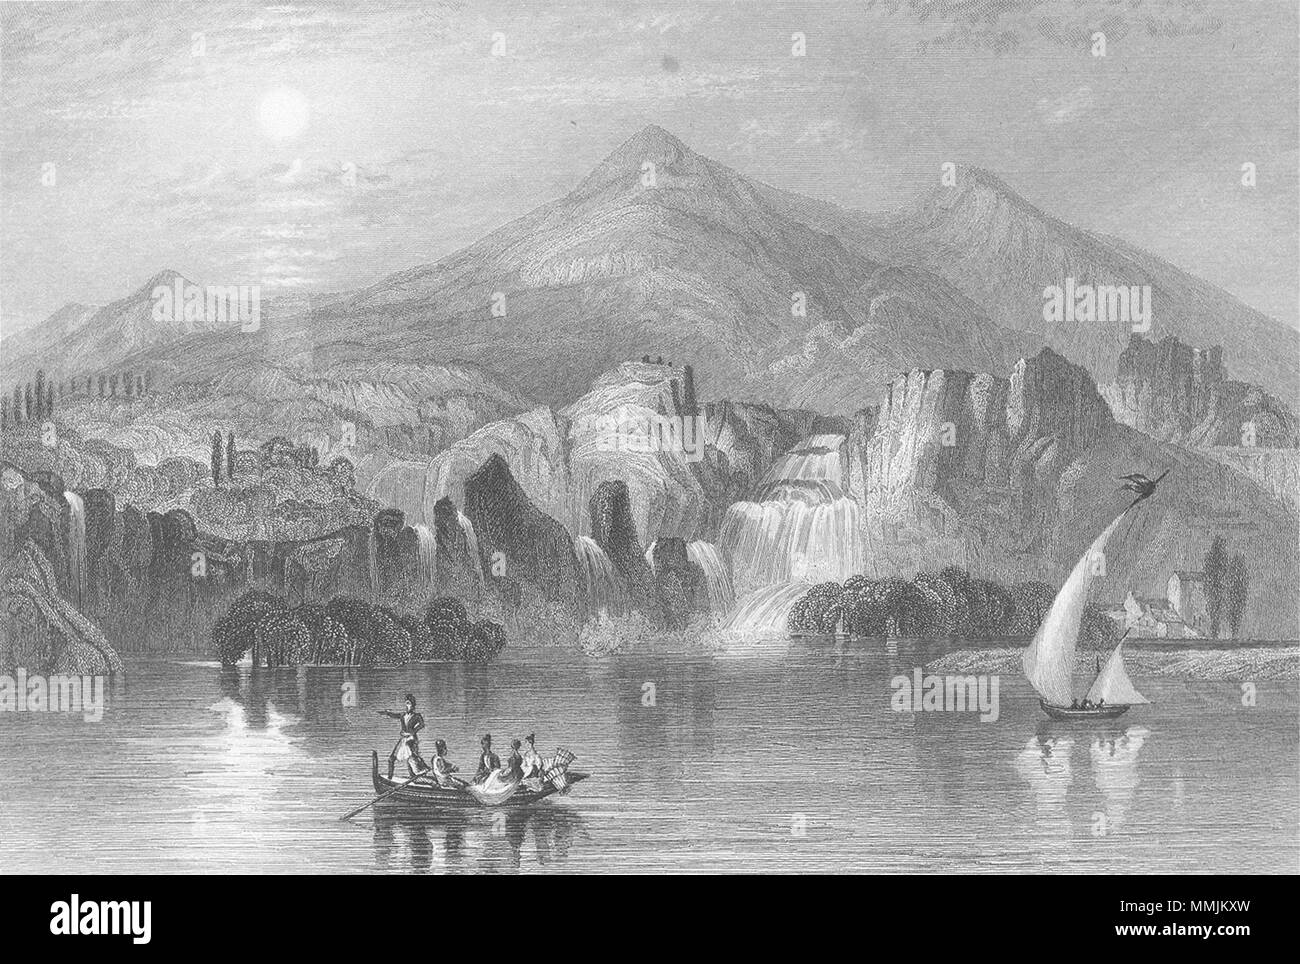 La Croazia. Cascata, Krka. Illyria. Sargent 1846 antica immagine di stampa Foto Stock